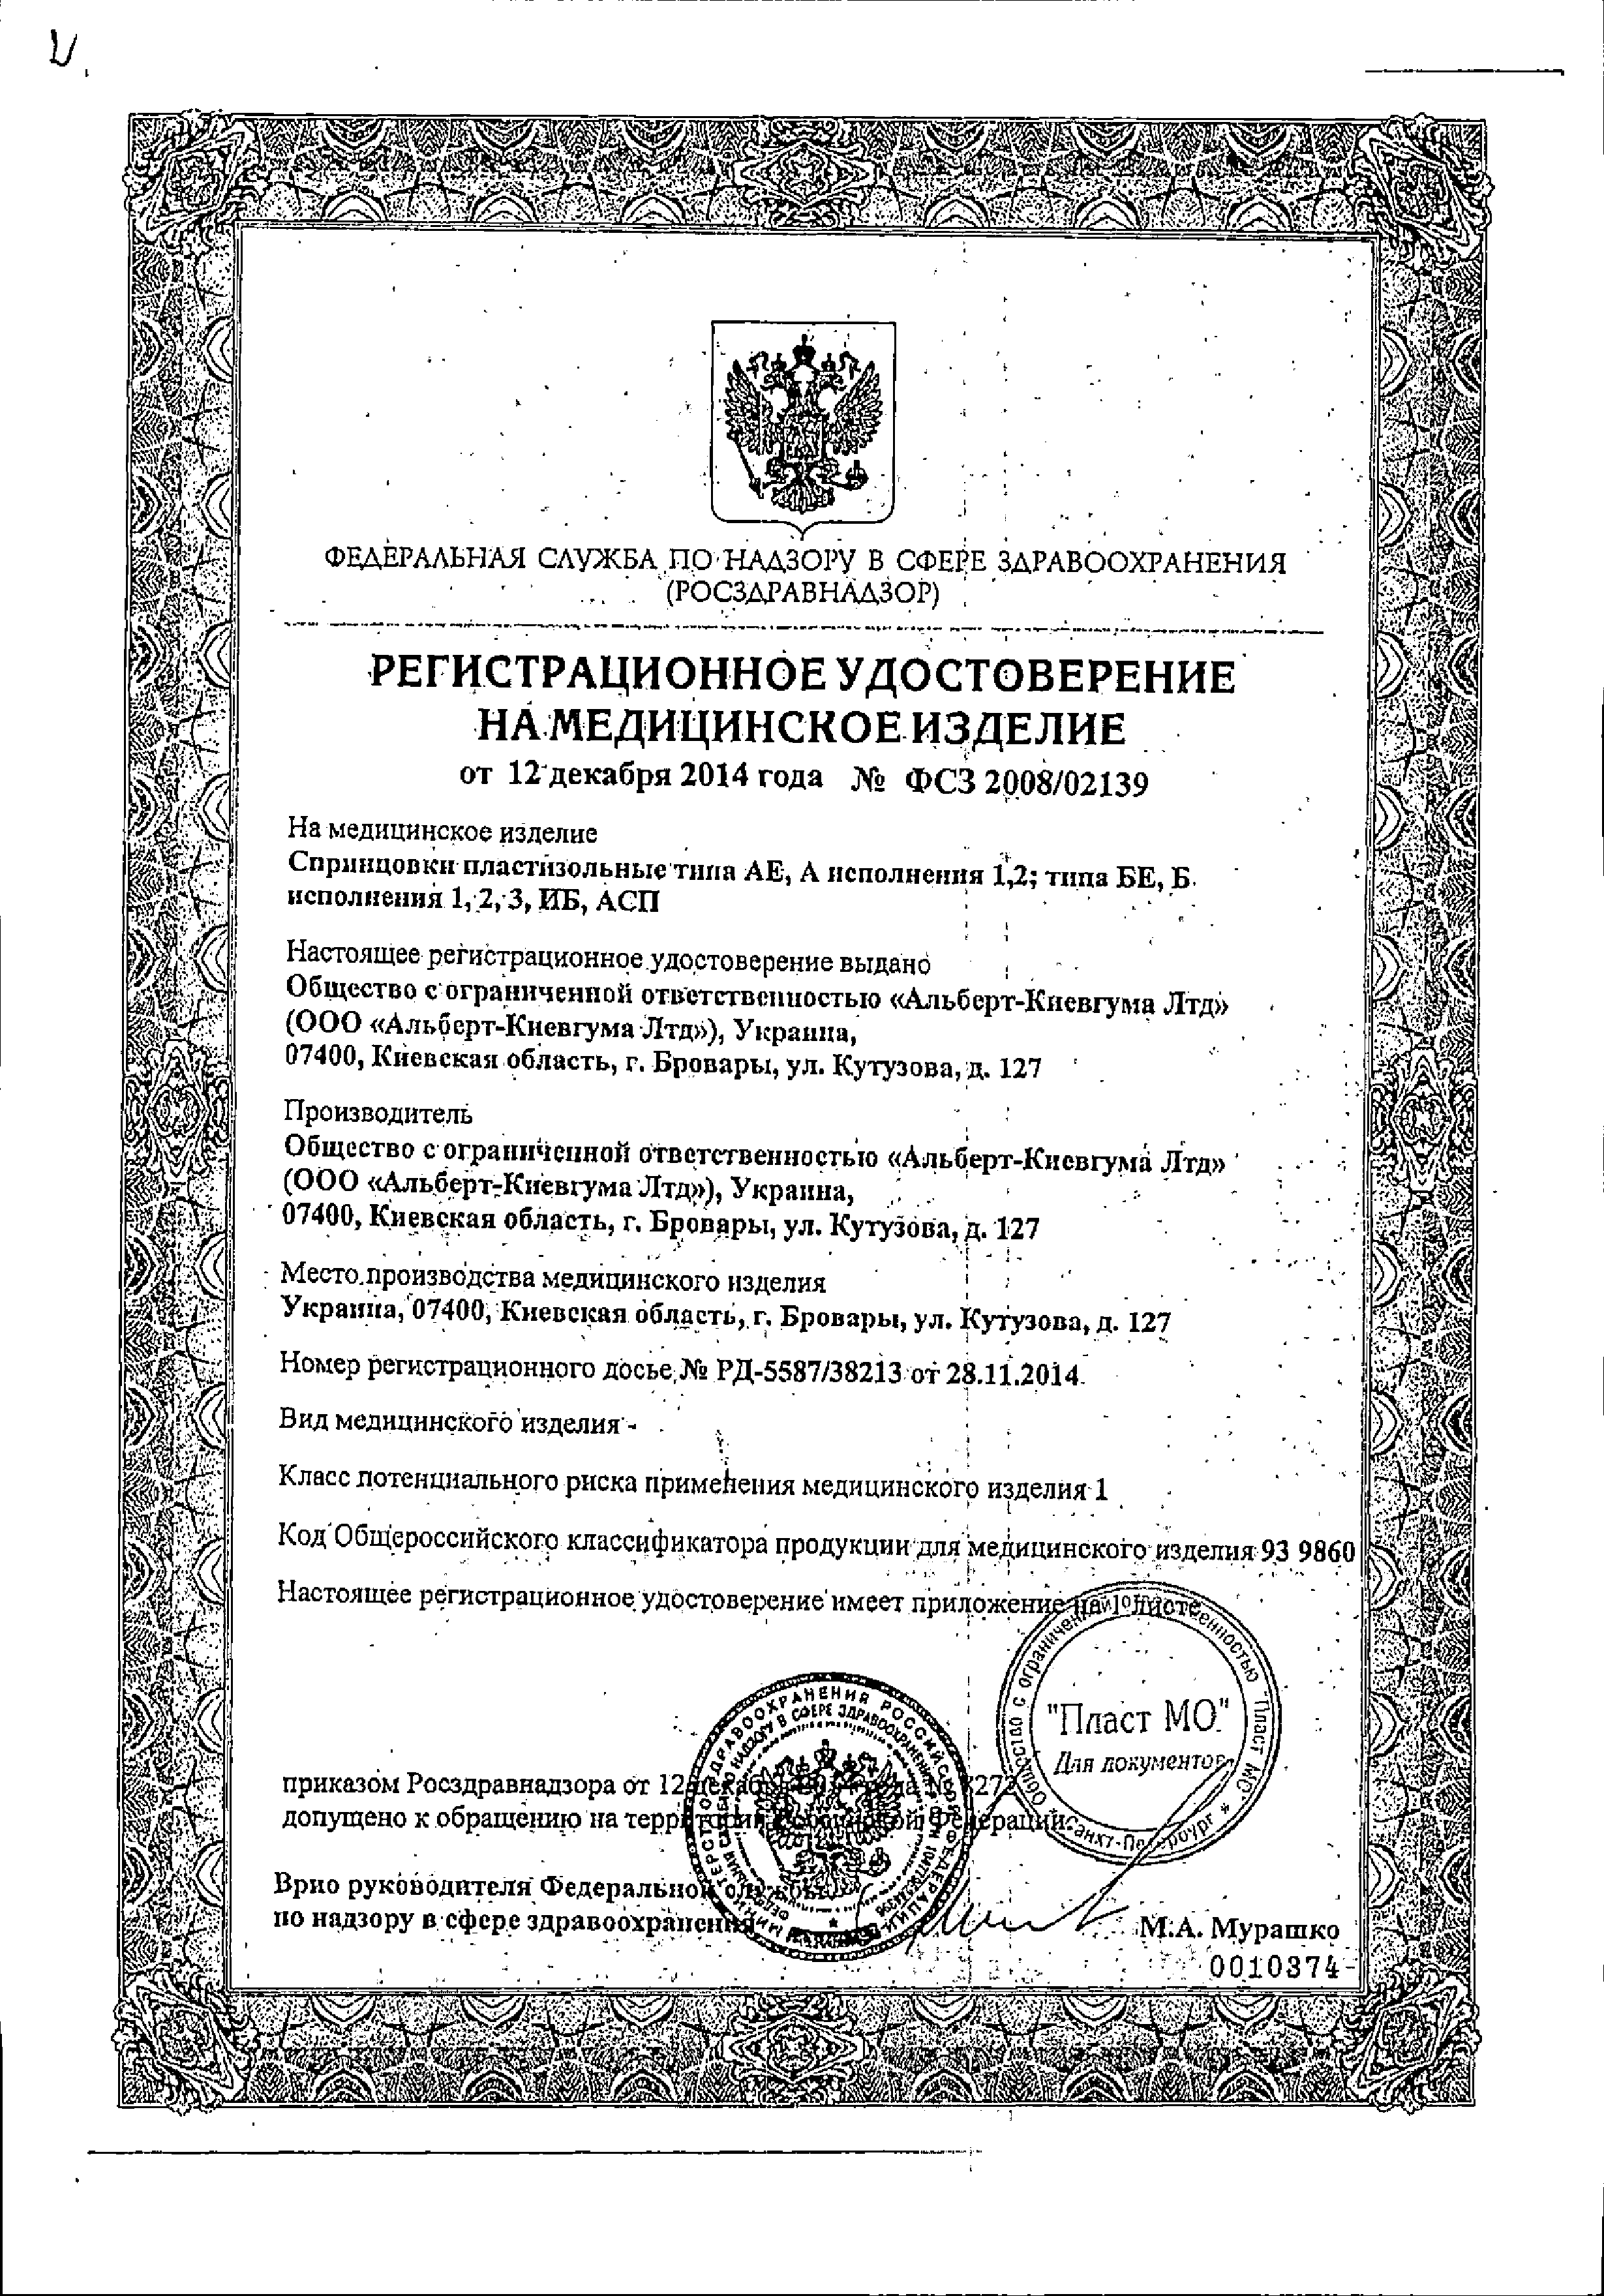 Спринцовка пластизольная типа А12 сертификат